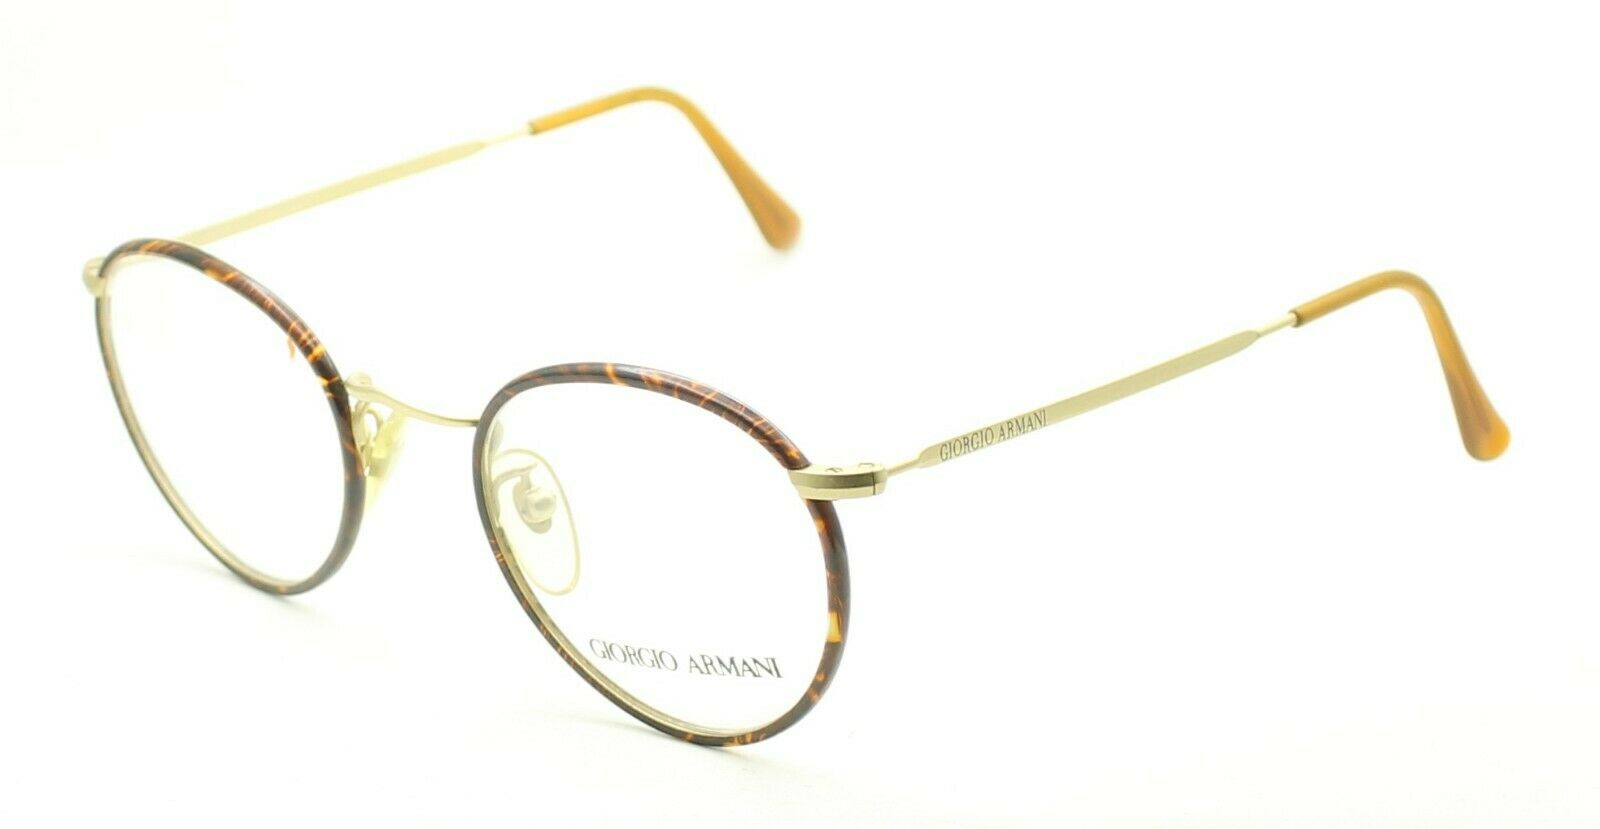 GIORGIO ARMANI GA 112 713 47mm Eyewear FRAMES Eyeglasses RX Optical Glasses  New - GGV Eyewear